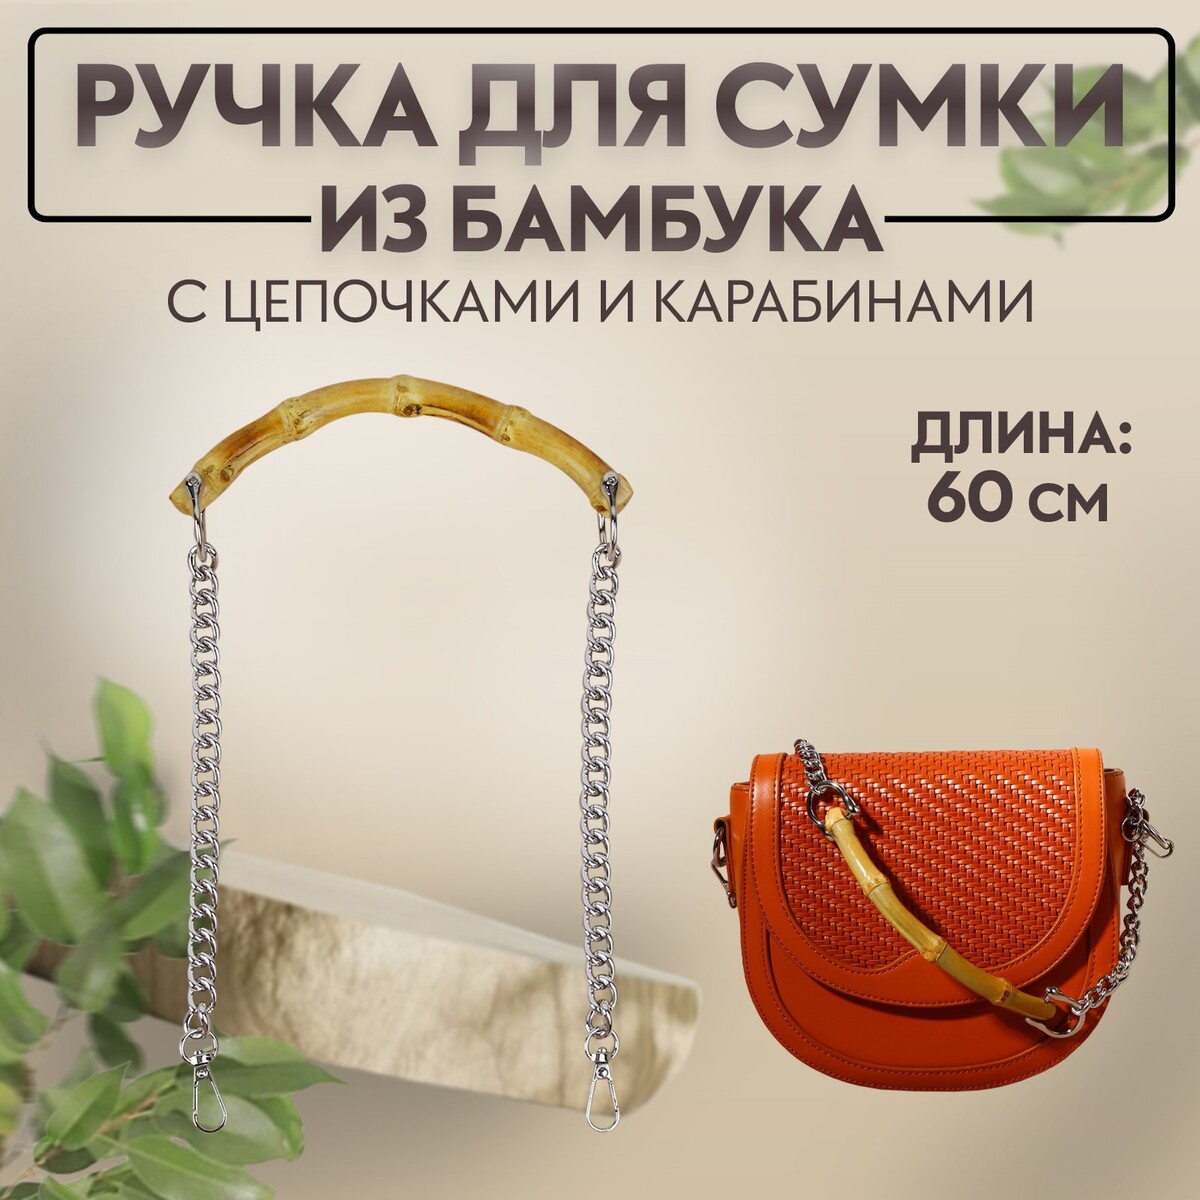 Ручка для сумки, бамбук, с цепочками и карабинами, 60 см, цвет серебряный ручка для сумки с плоскими цепочками и карабинами 120 × 3 см серебряный